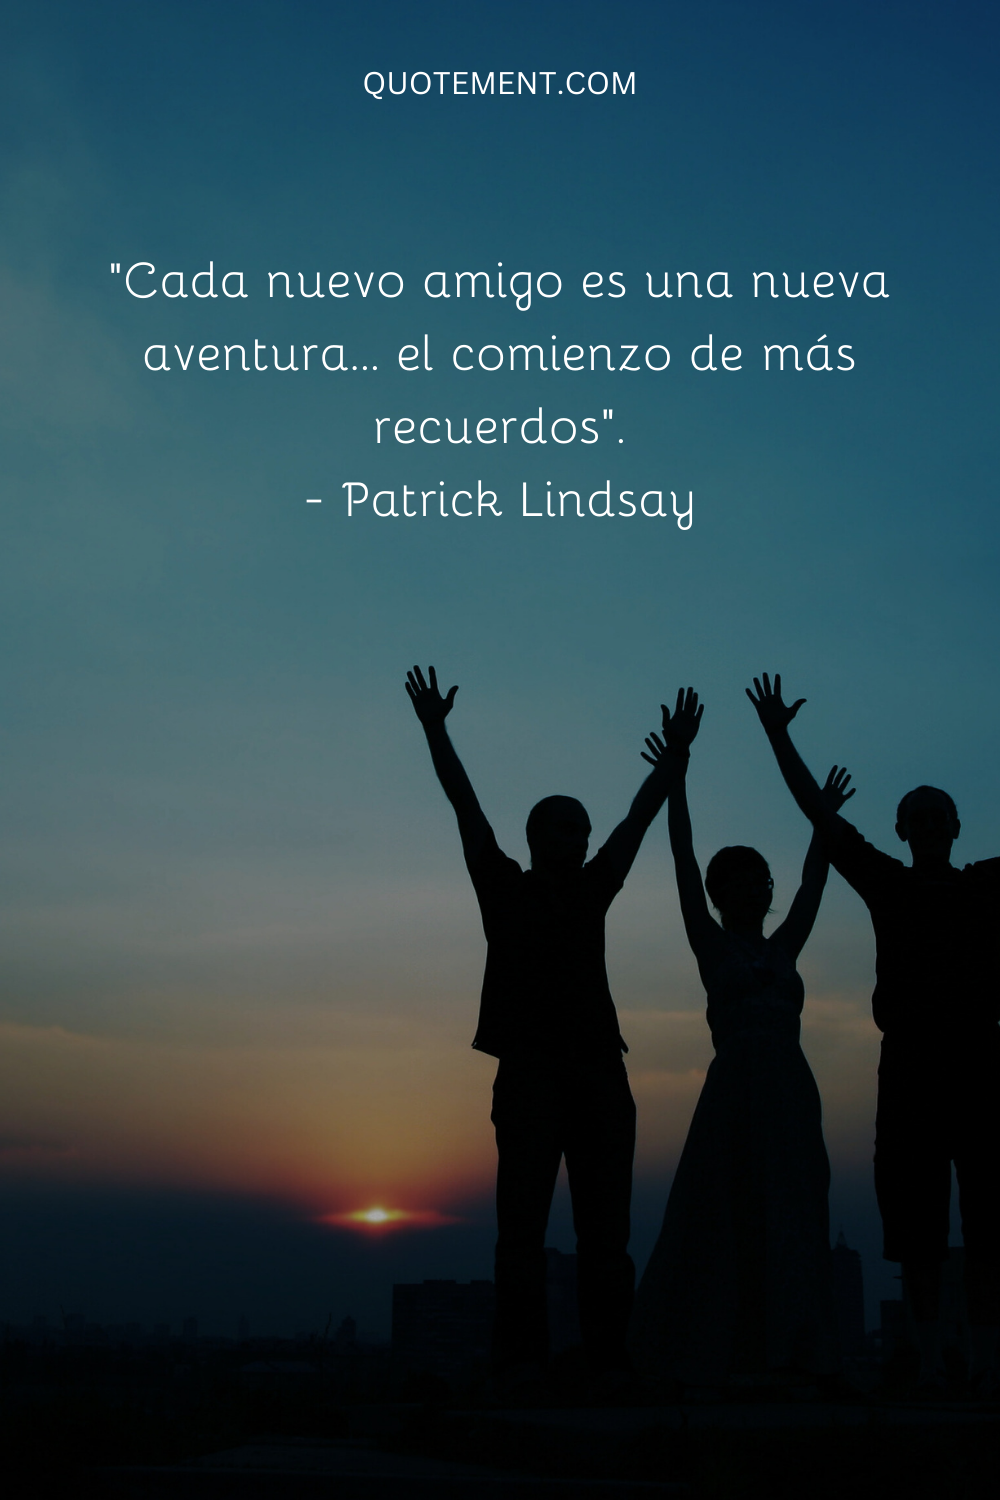 "Cada nuevo amigo es una nueva aventura... el comienzo de más recuerdos". - Patrick Lindsay